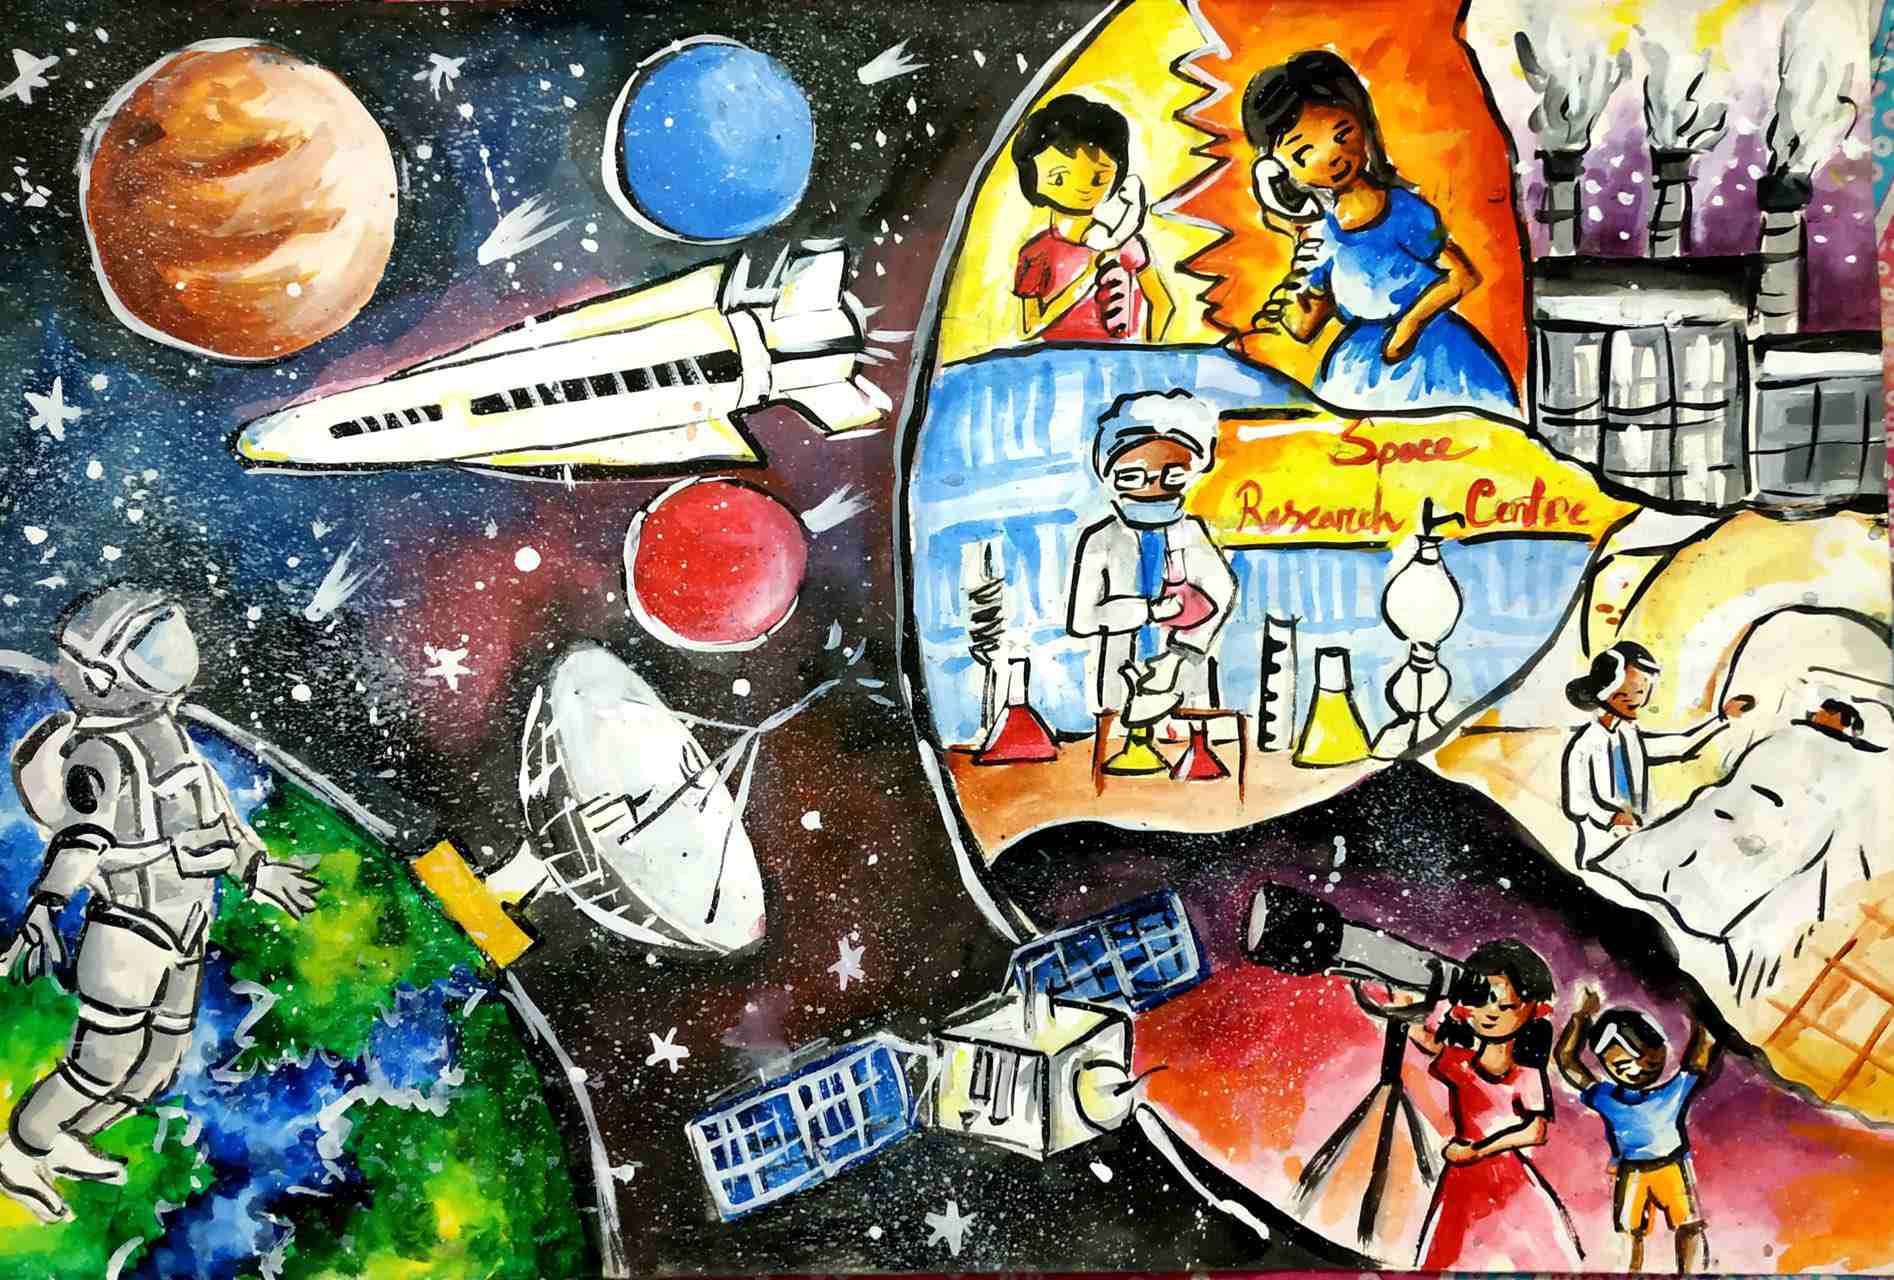 航天日绘画作品《太空研究中心》,孟加拉国Paromita Islam